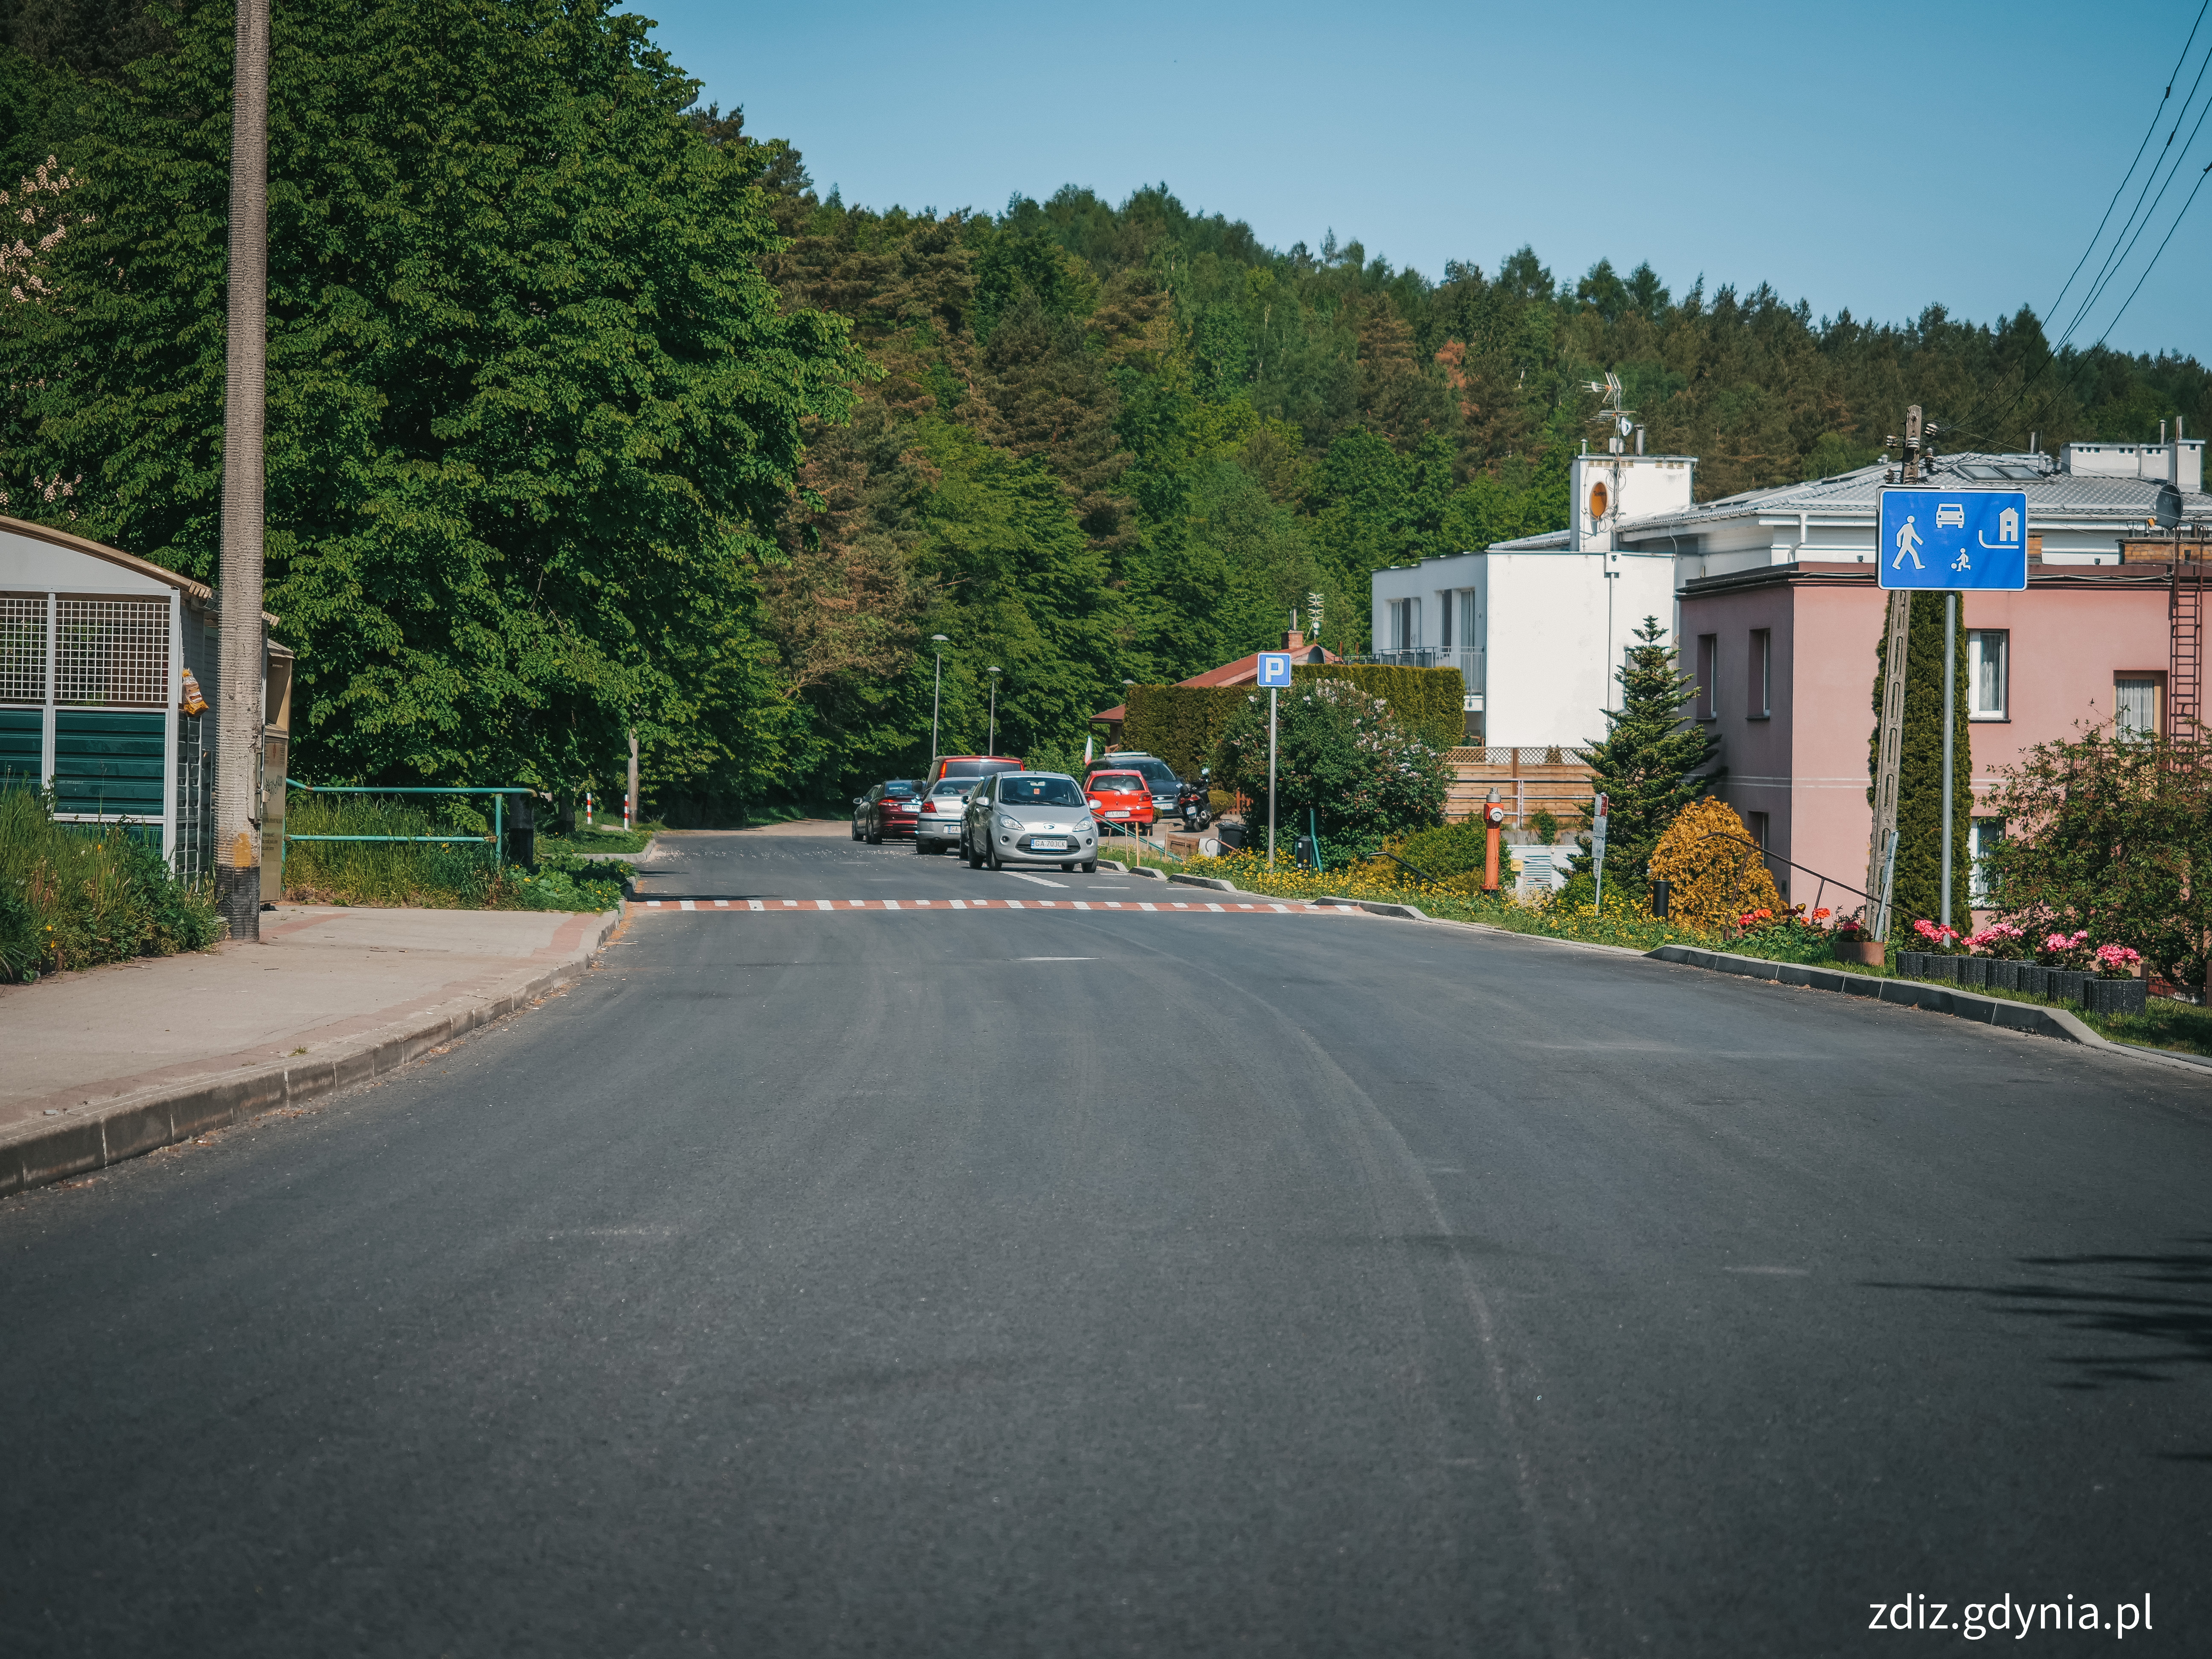 ulica, widoczny nowy asfalt oraz znak strefy zamieszkania